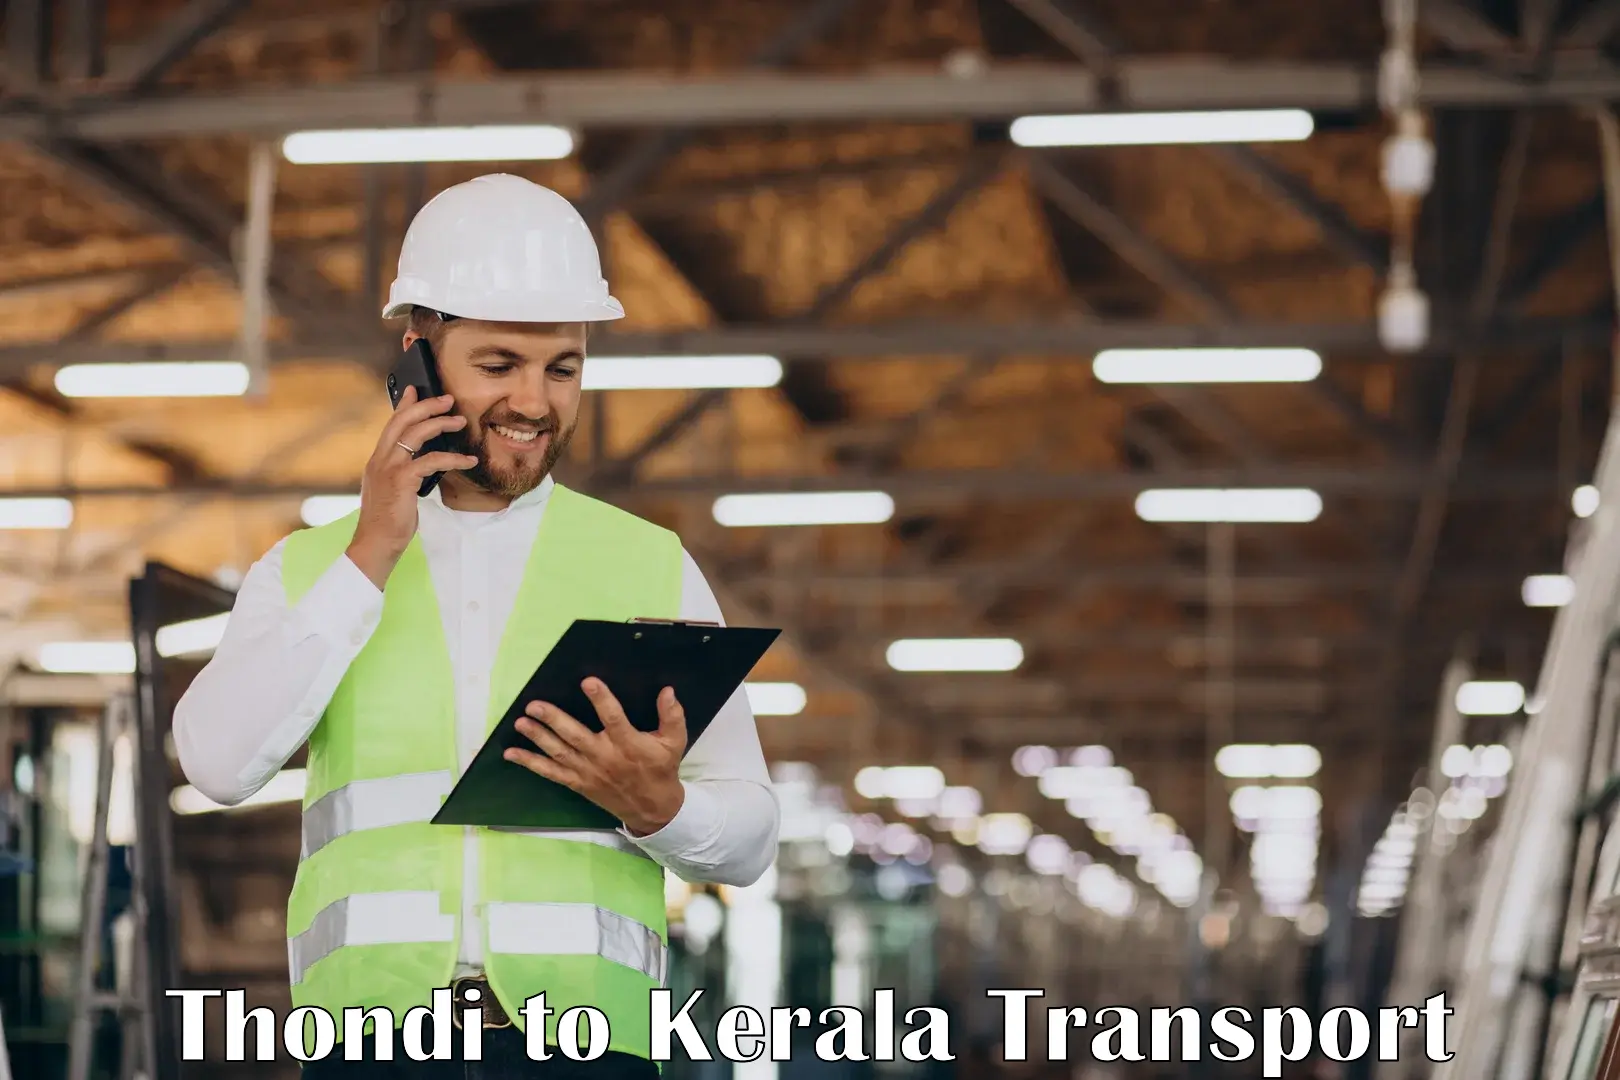 Express transport services Thondi to Kuttiady